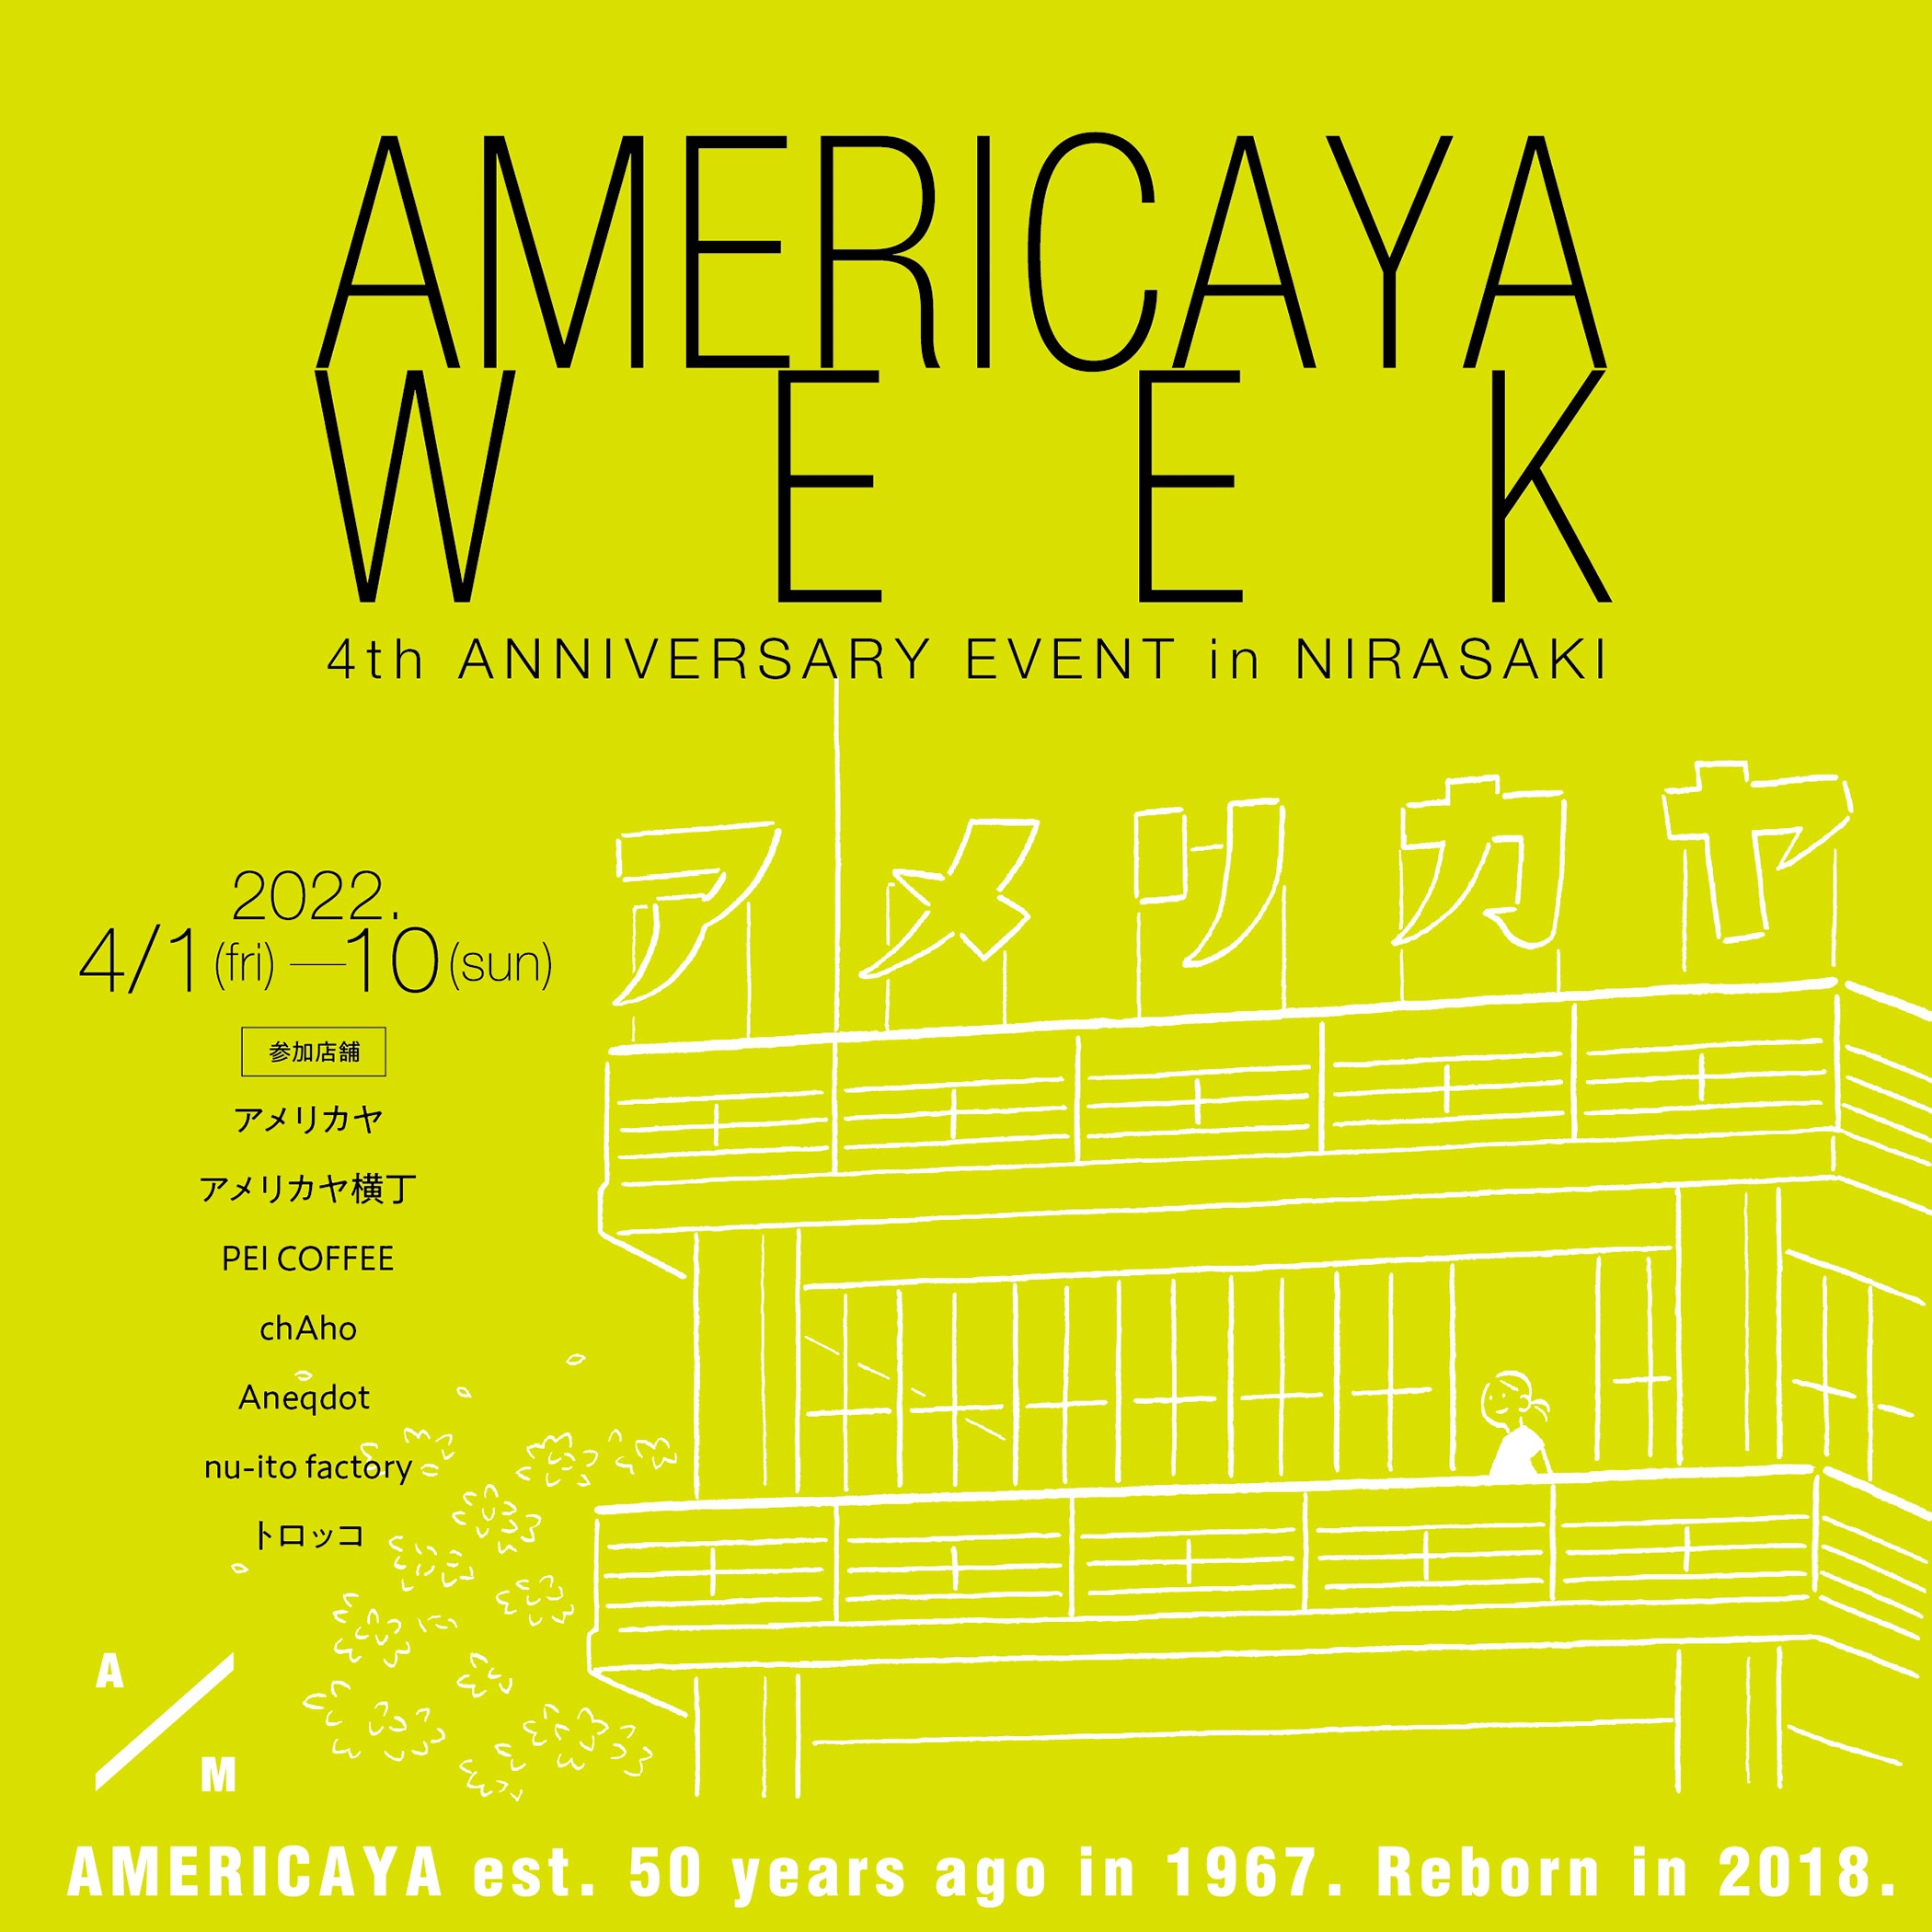 AMERICAYA WEEK【4th ANNIVERSARY EVENT】開催のお知らせ